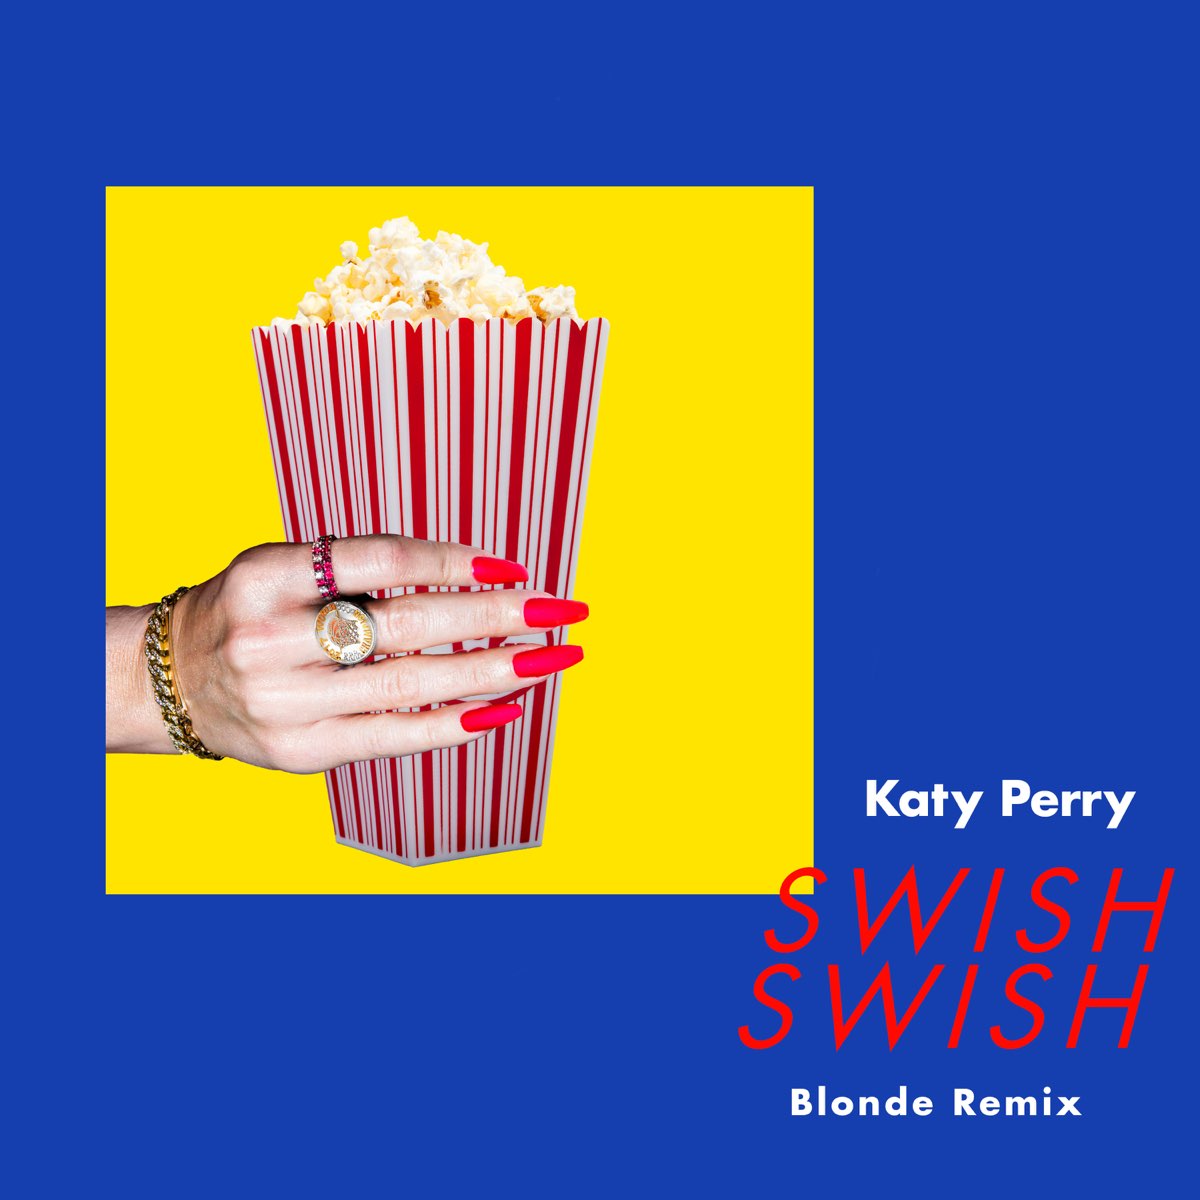 Blonde remix. Кэти Перри свиш свиш. Katy Perry Swish Swish обложка. Katy Perry 2017 Swish. Katy Perry feat. Nicki Minaj - Swish Swish.